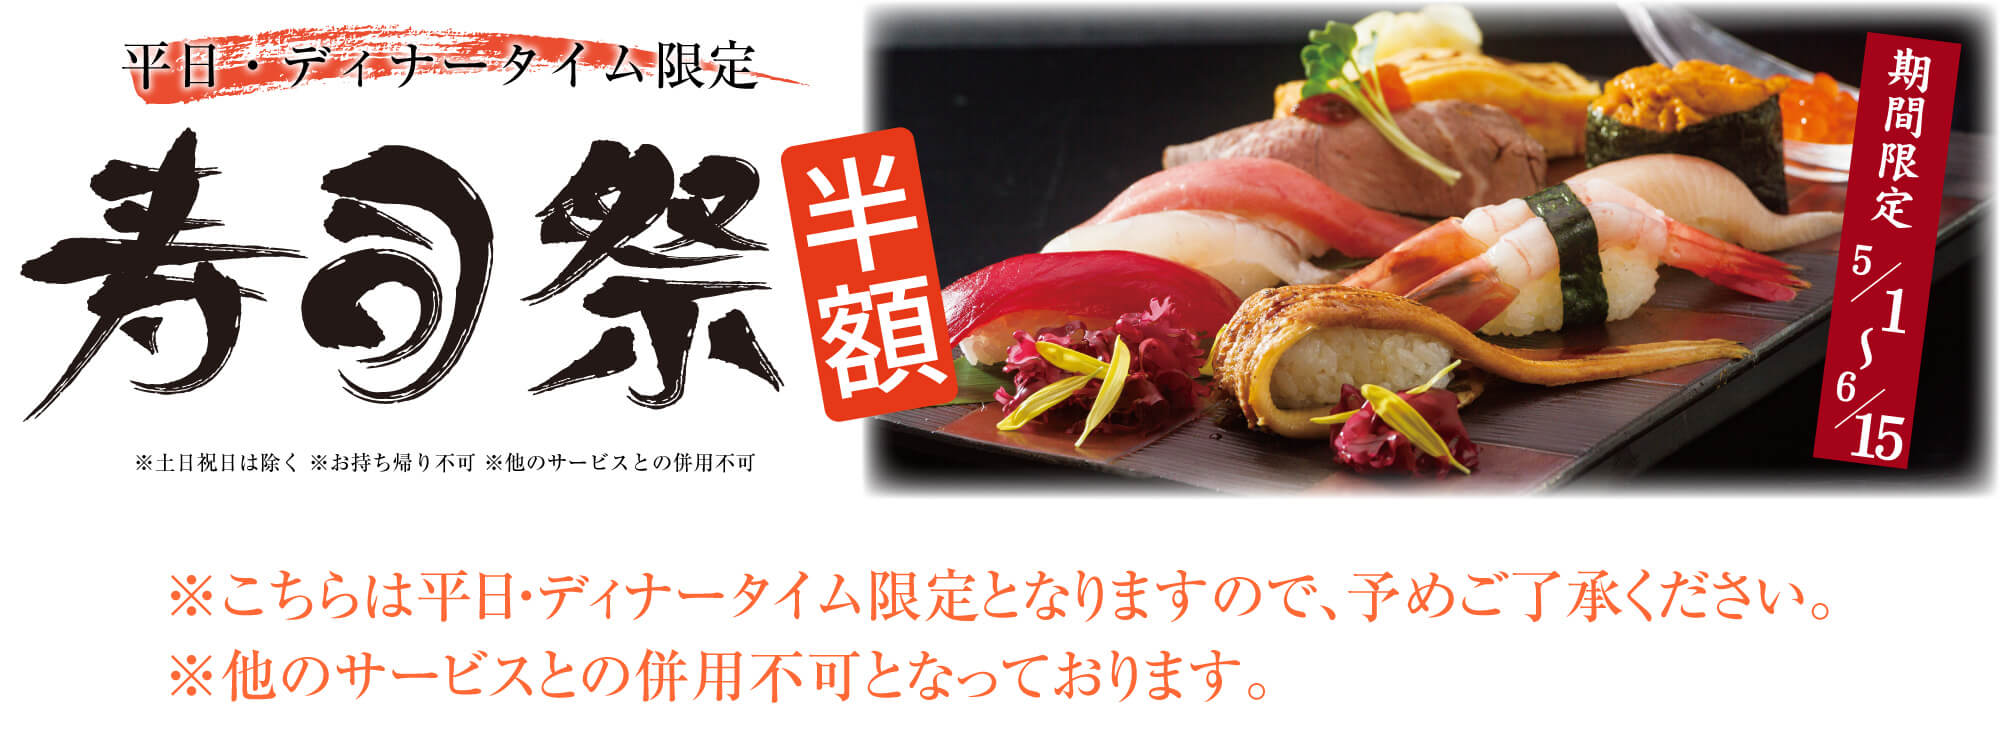 寿司祭 寿司 ディナータイム限定 半額 - 水戸 和食 魚旬 がんこ家 水戸 和食